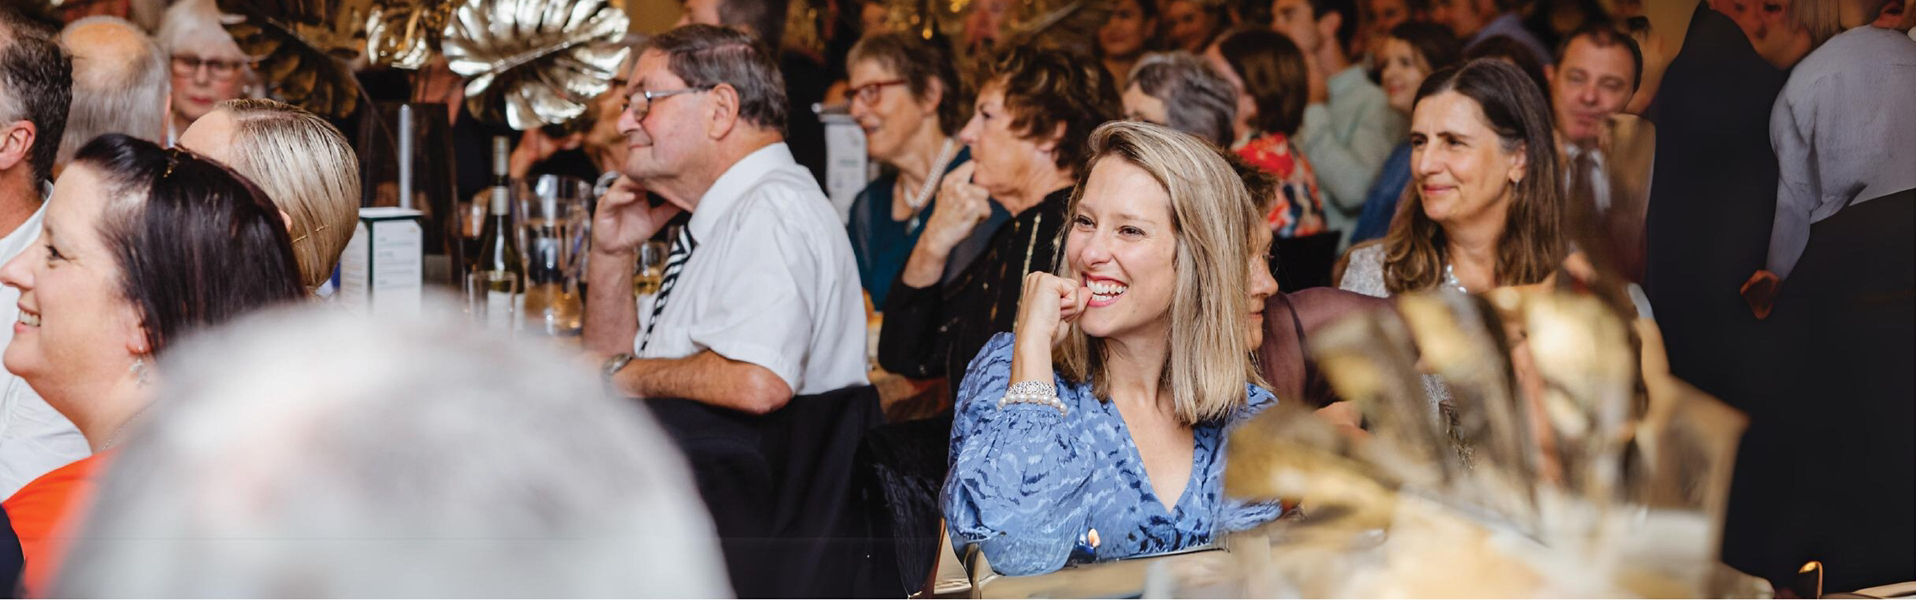 Hawkes Bay Awards participants smiling at a table